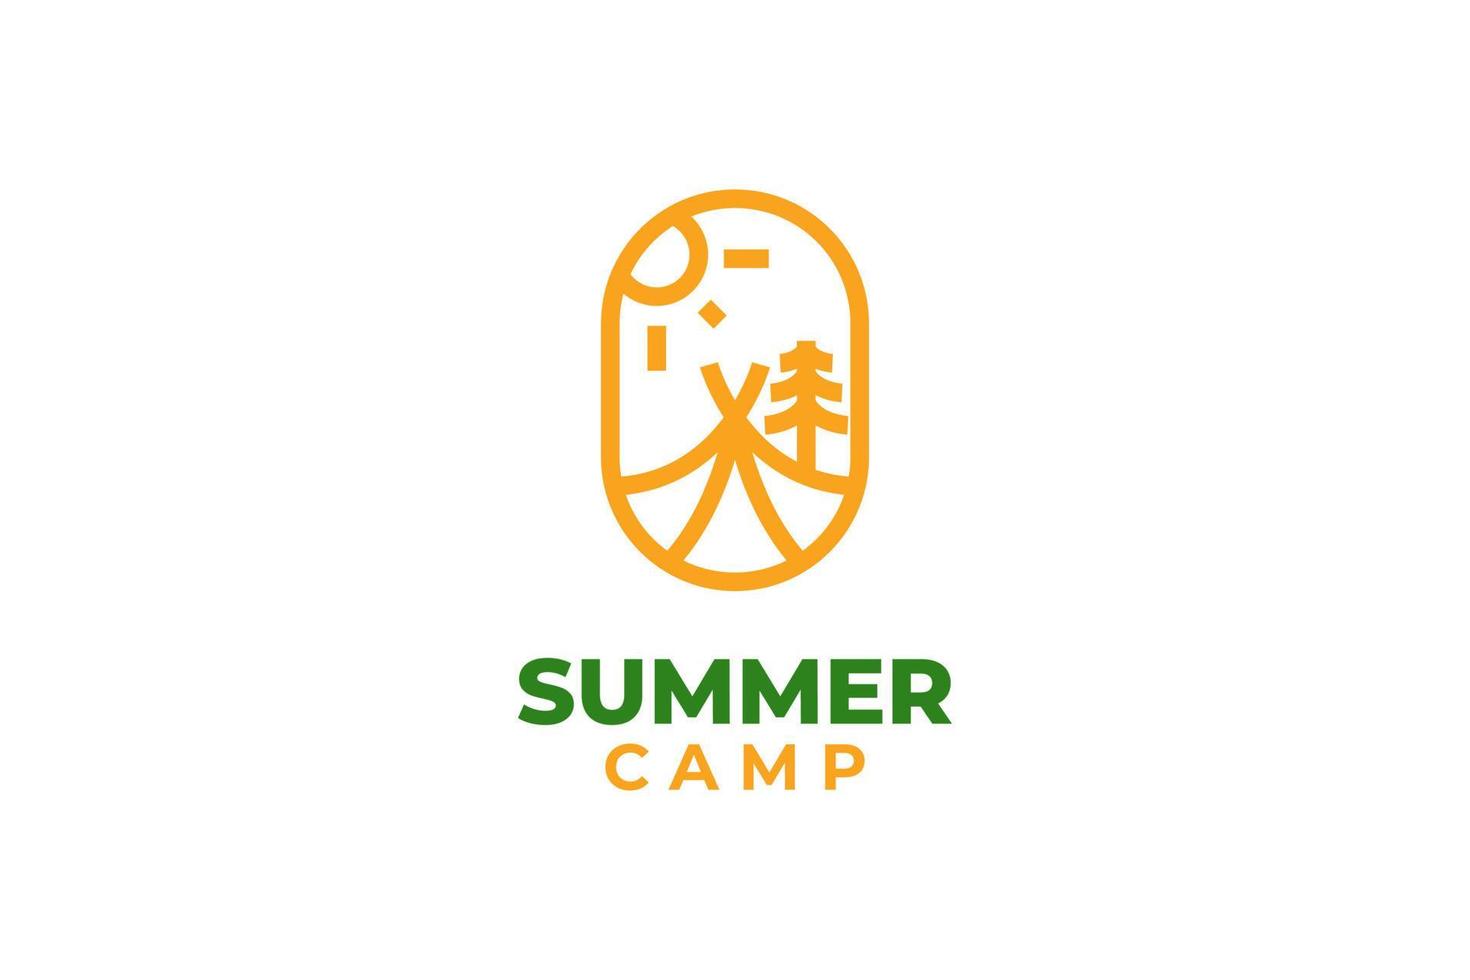 Summer camp logo design vector